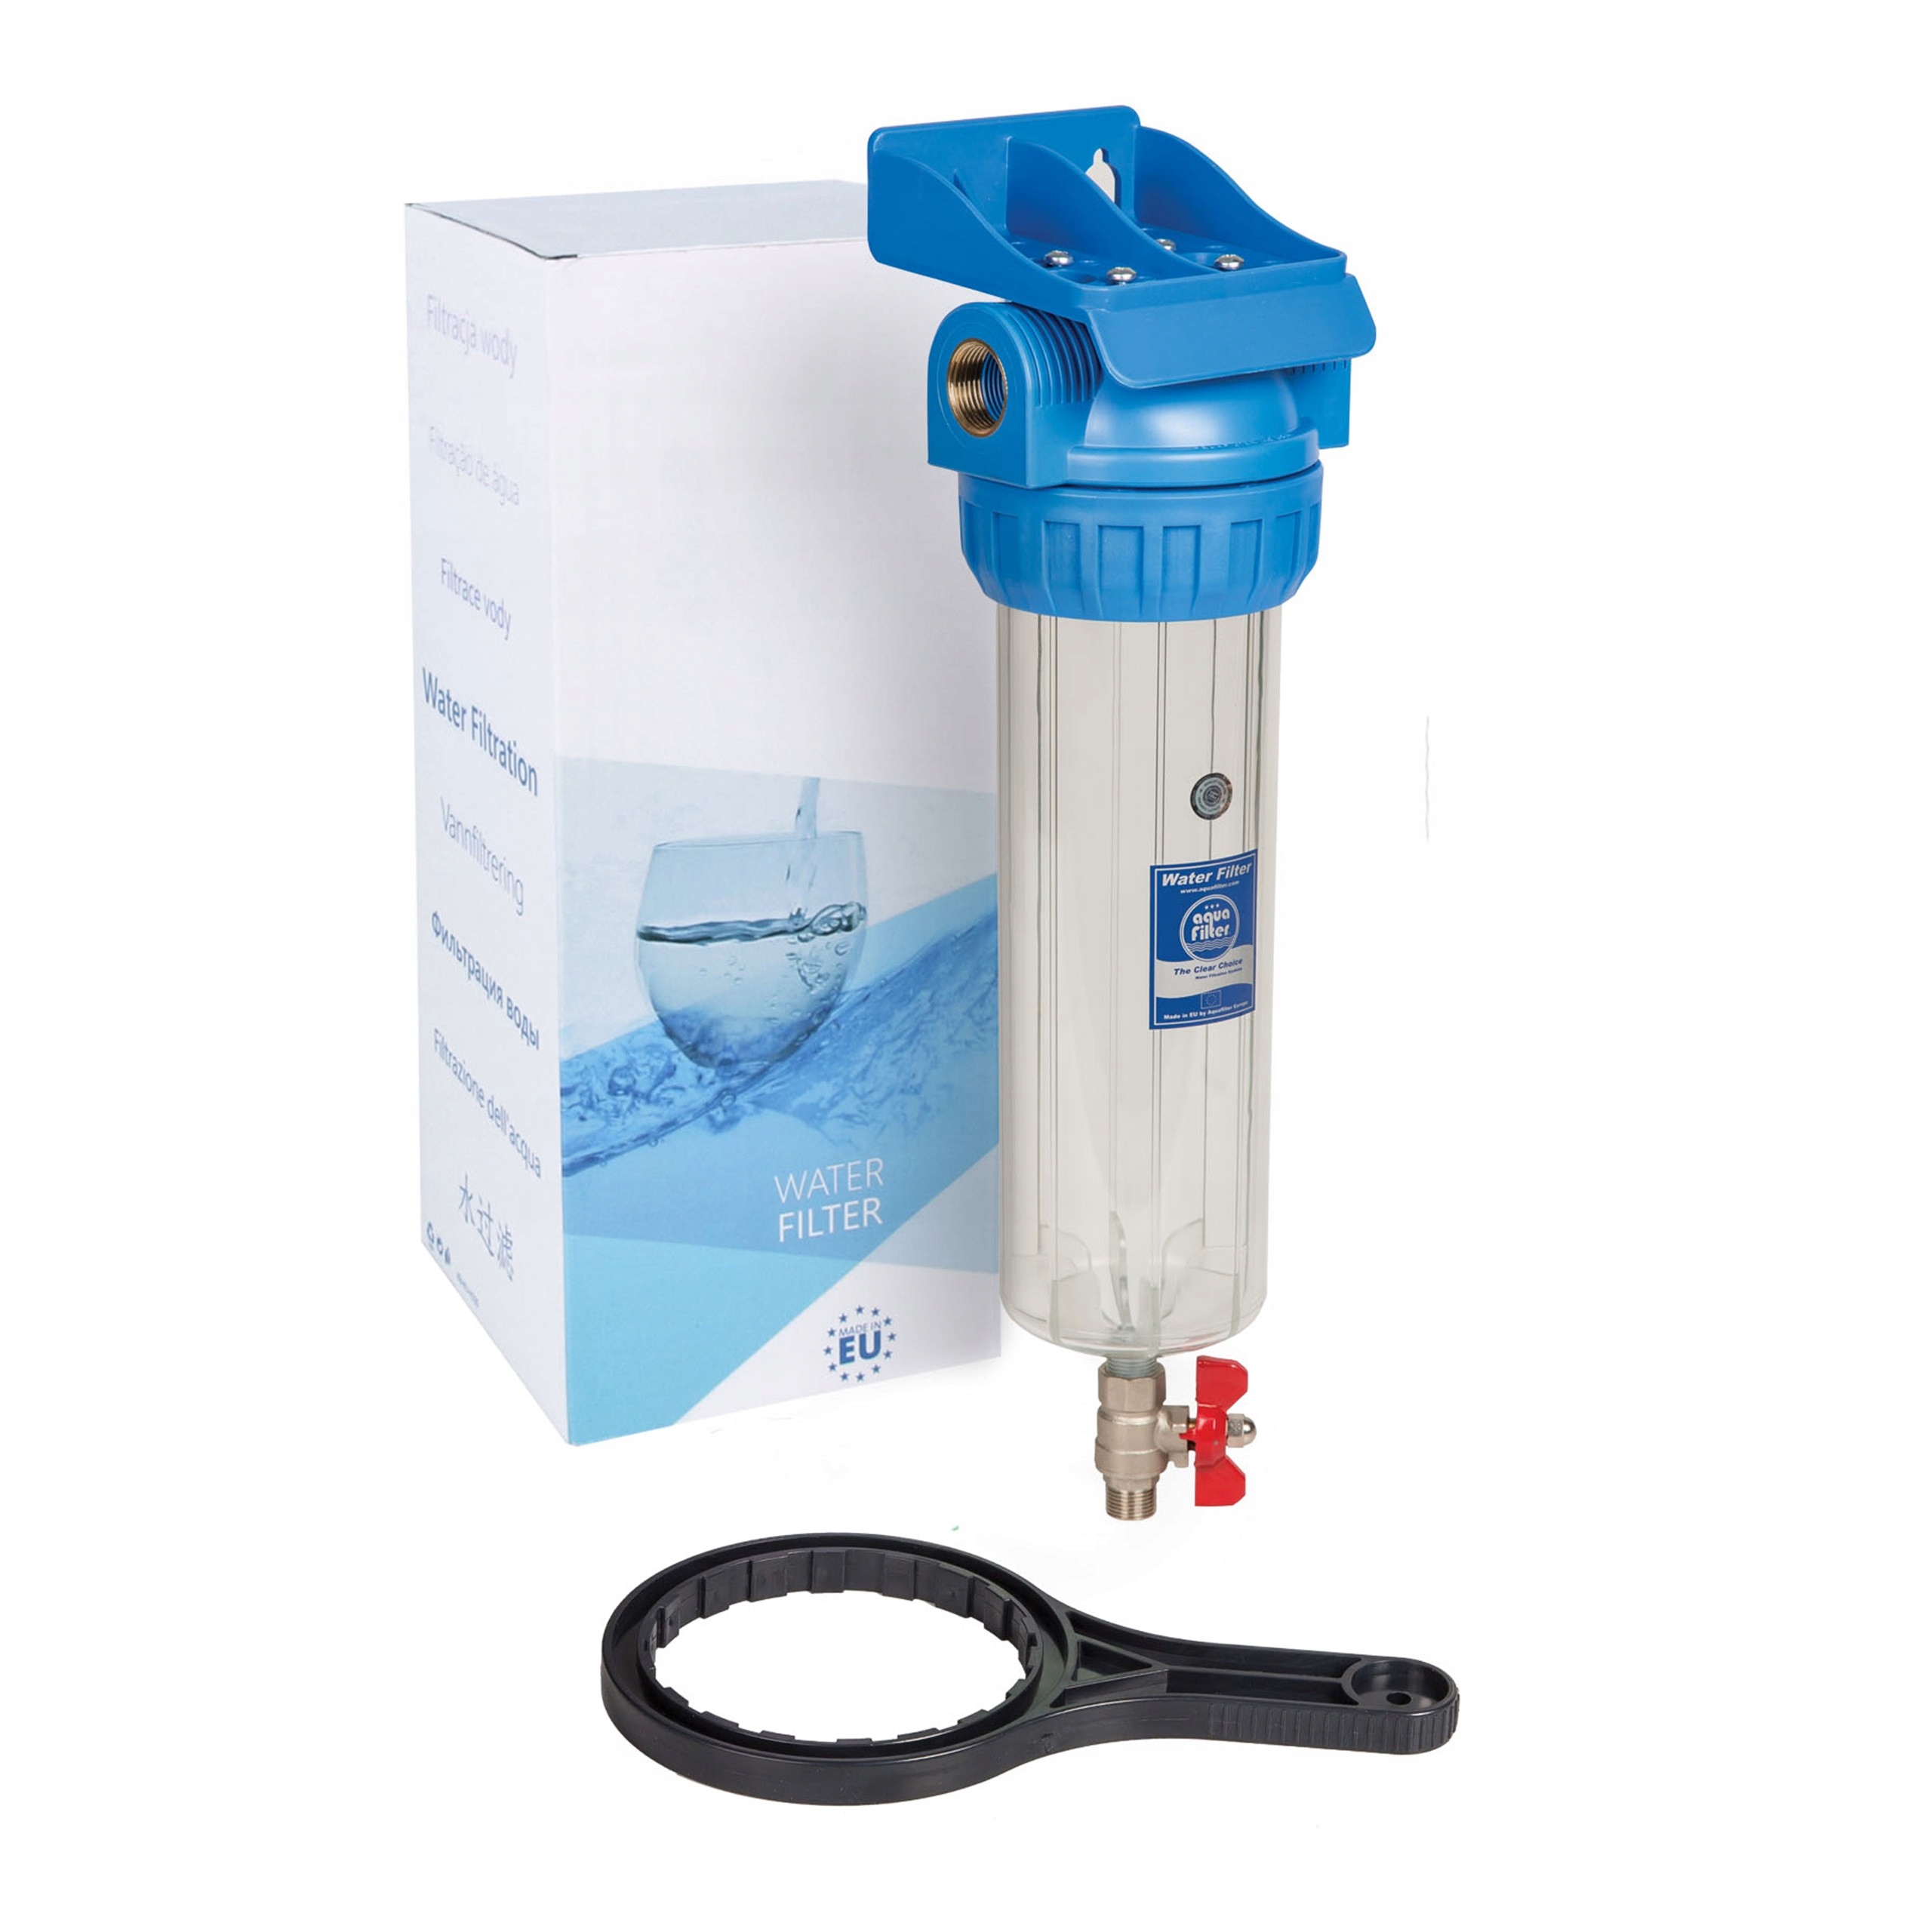 Проточная вода отзывы. Фильтр Aquafilter fhpr1-hp1. Фильтр магистральный Aquafilter h10g-fhpr34-3vr. Колба sl10 1/2 Аквафор. Корпус фильтра Aquafilter fhpr12-3v_r.